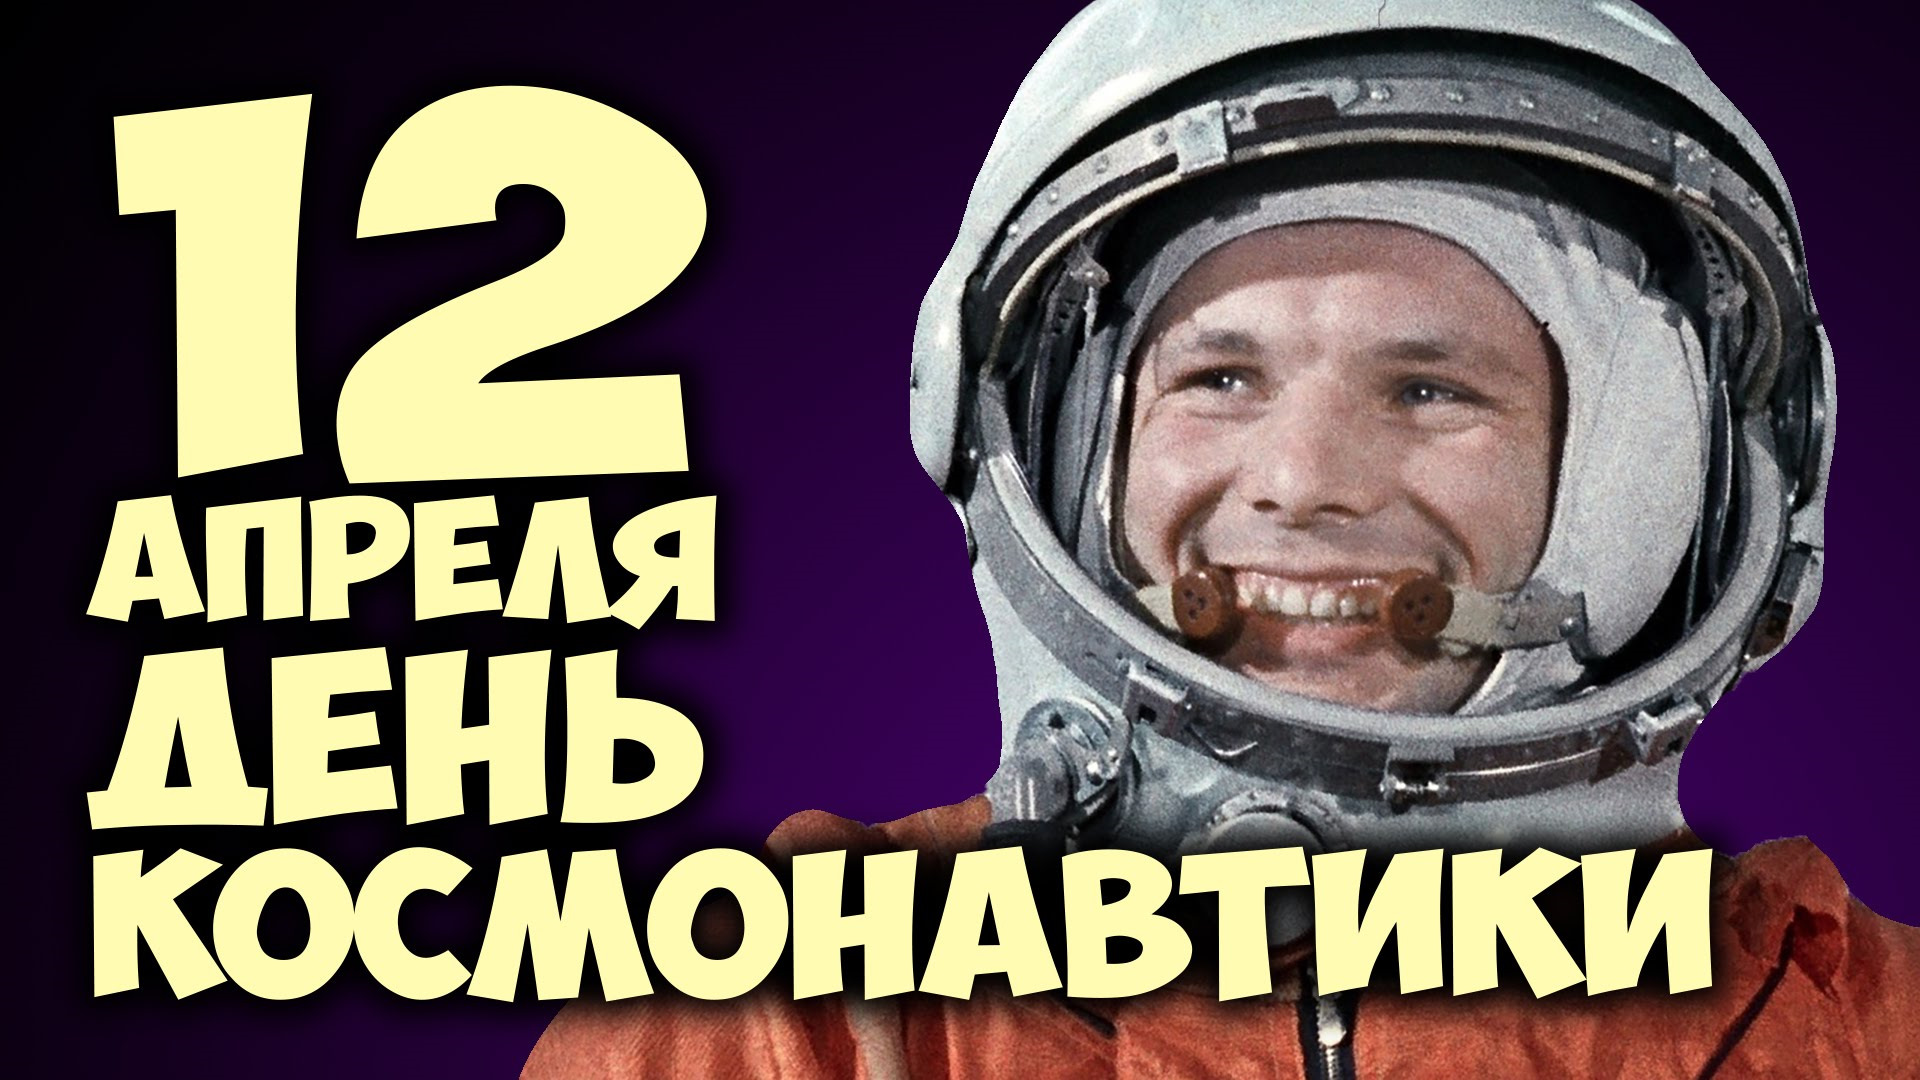 Какой сегодня праздник 12 апреля. День космонавтики. День Космонавта. 12 Апреля. 12 Апрель день КОММОНАВТИКИ.